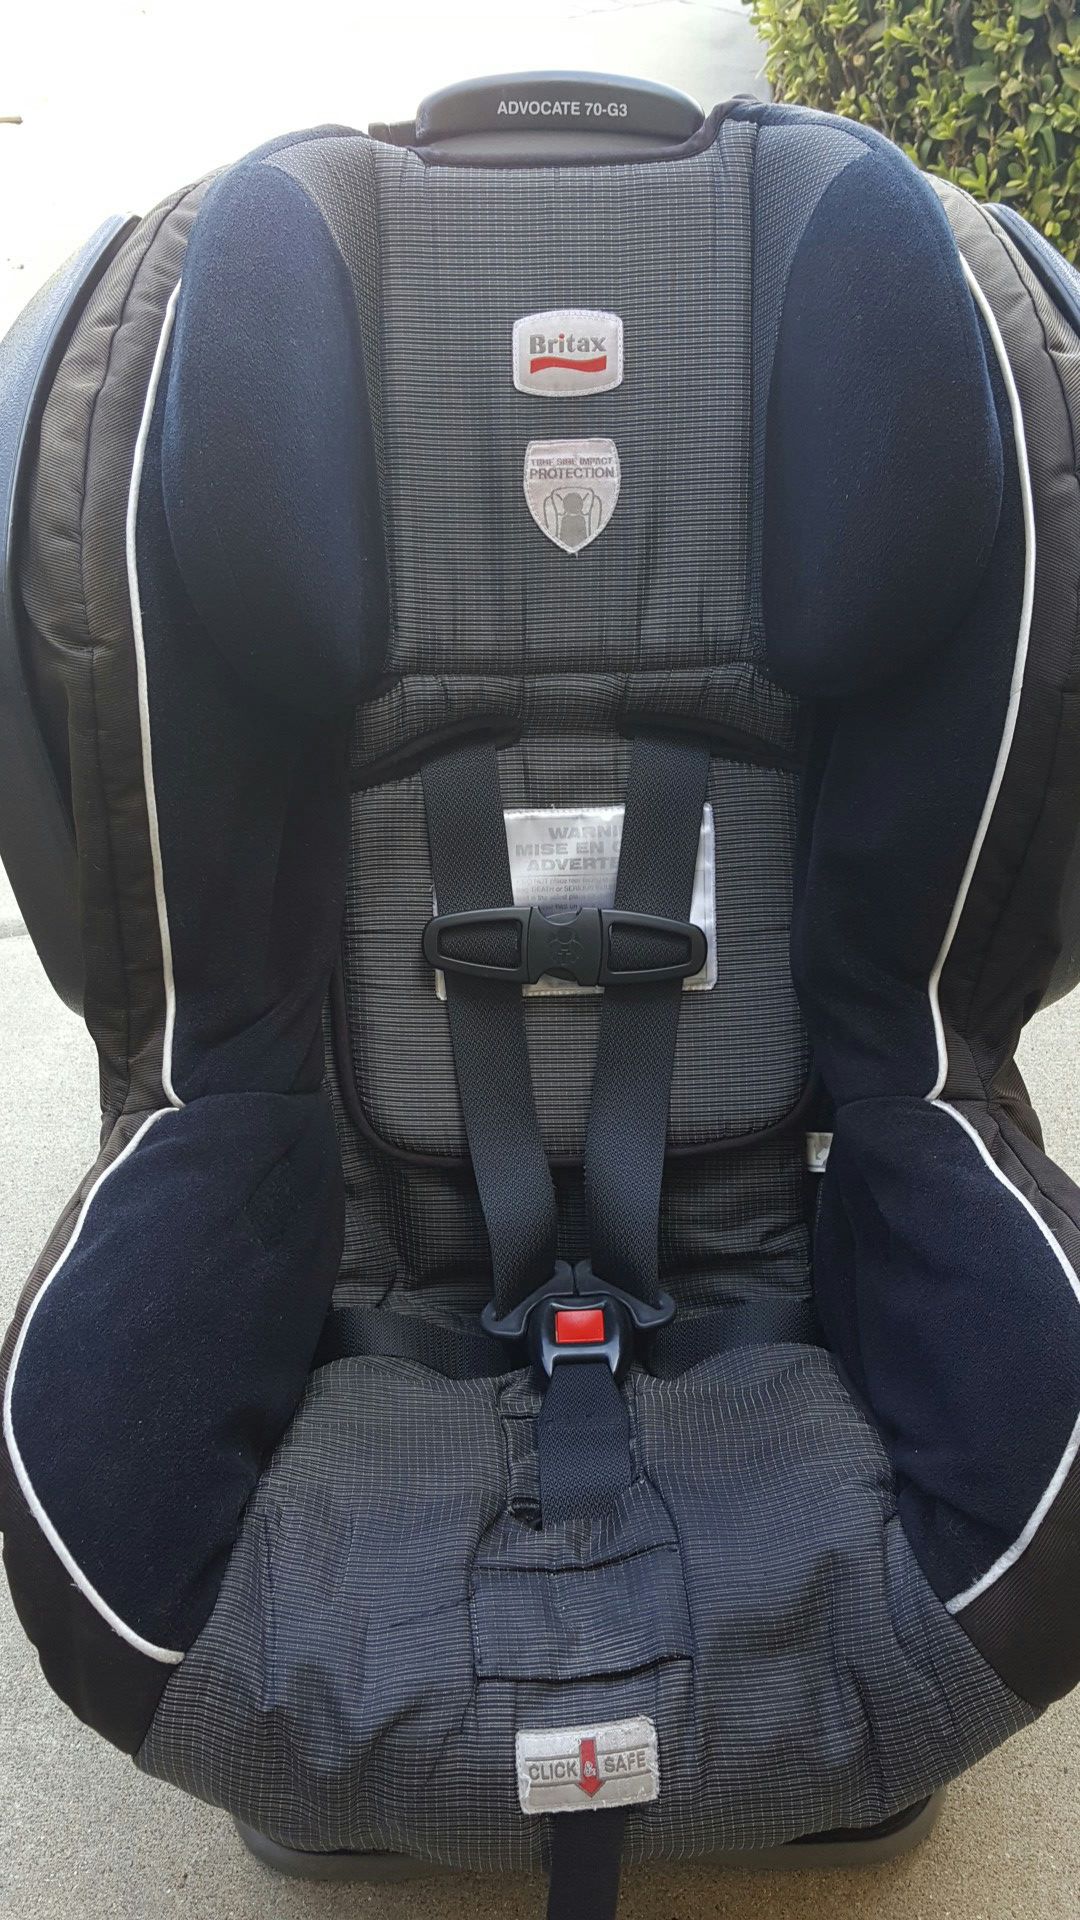 Britax advocate 70-G3 car seat